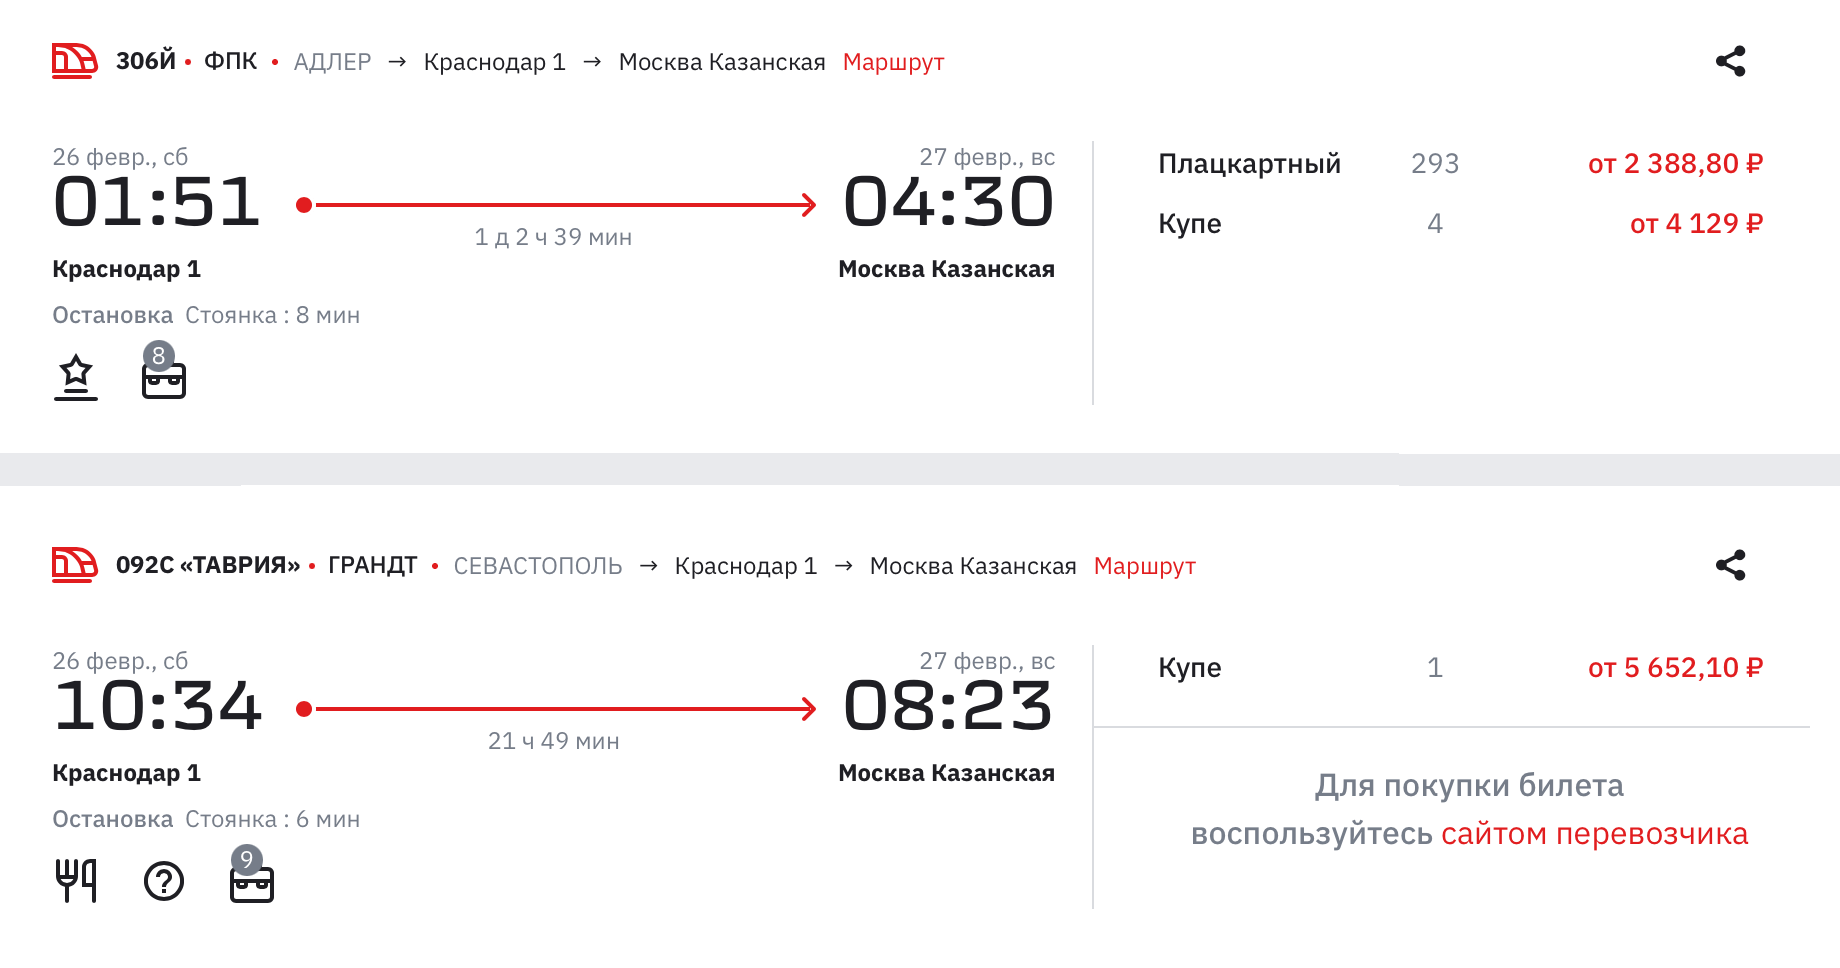 Билет на поезд из Краснодара в Москву на 26 февраля стоит от 2388 ₽. Источник: ticket.rzd.ru